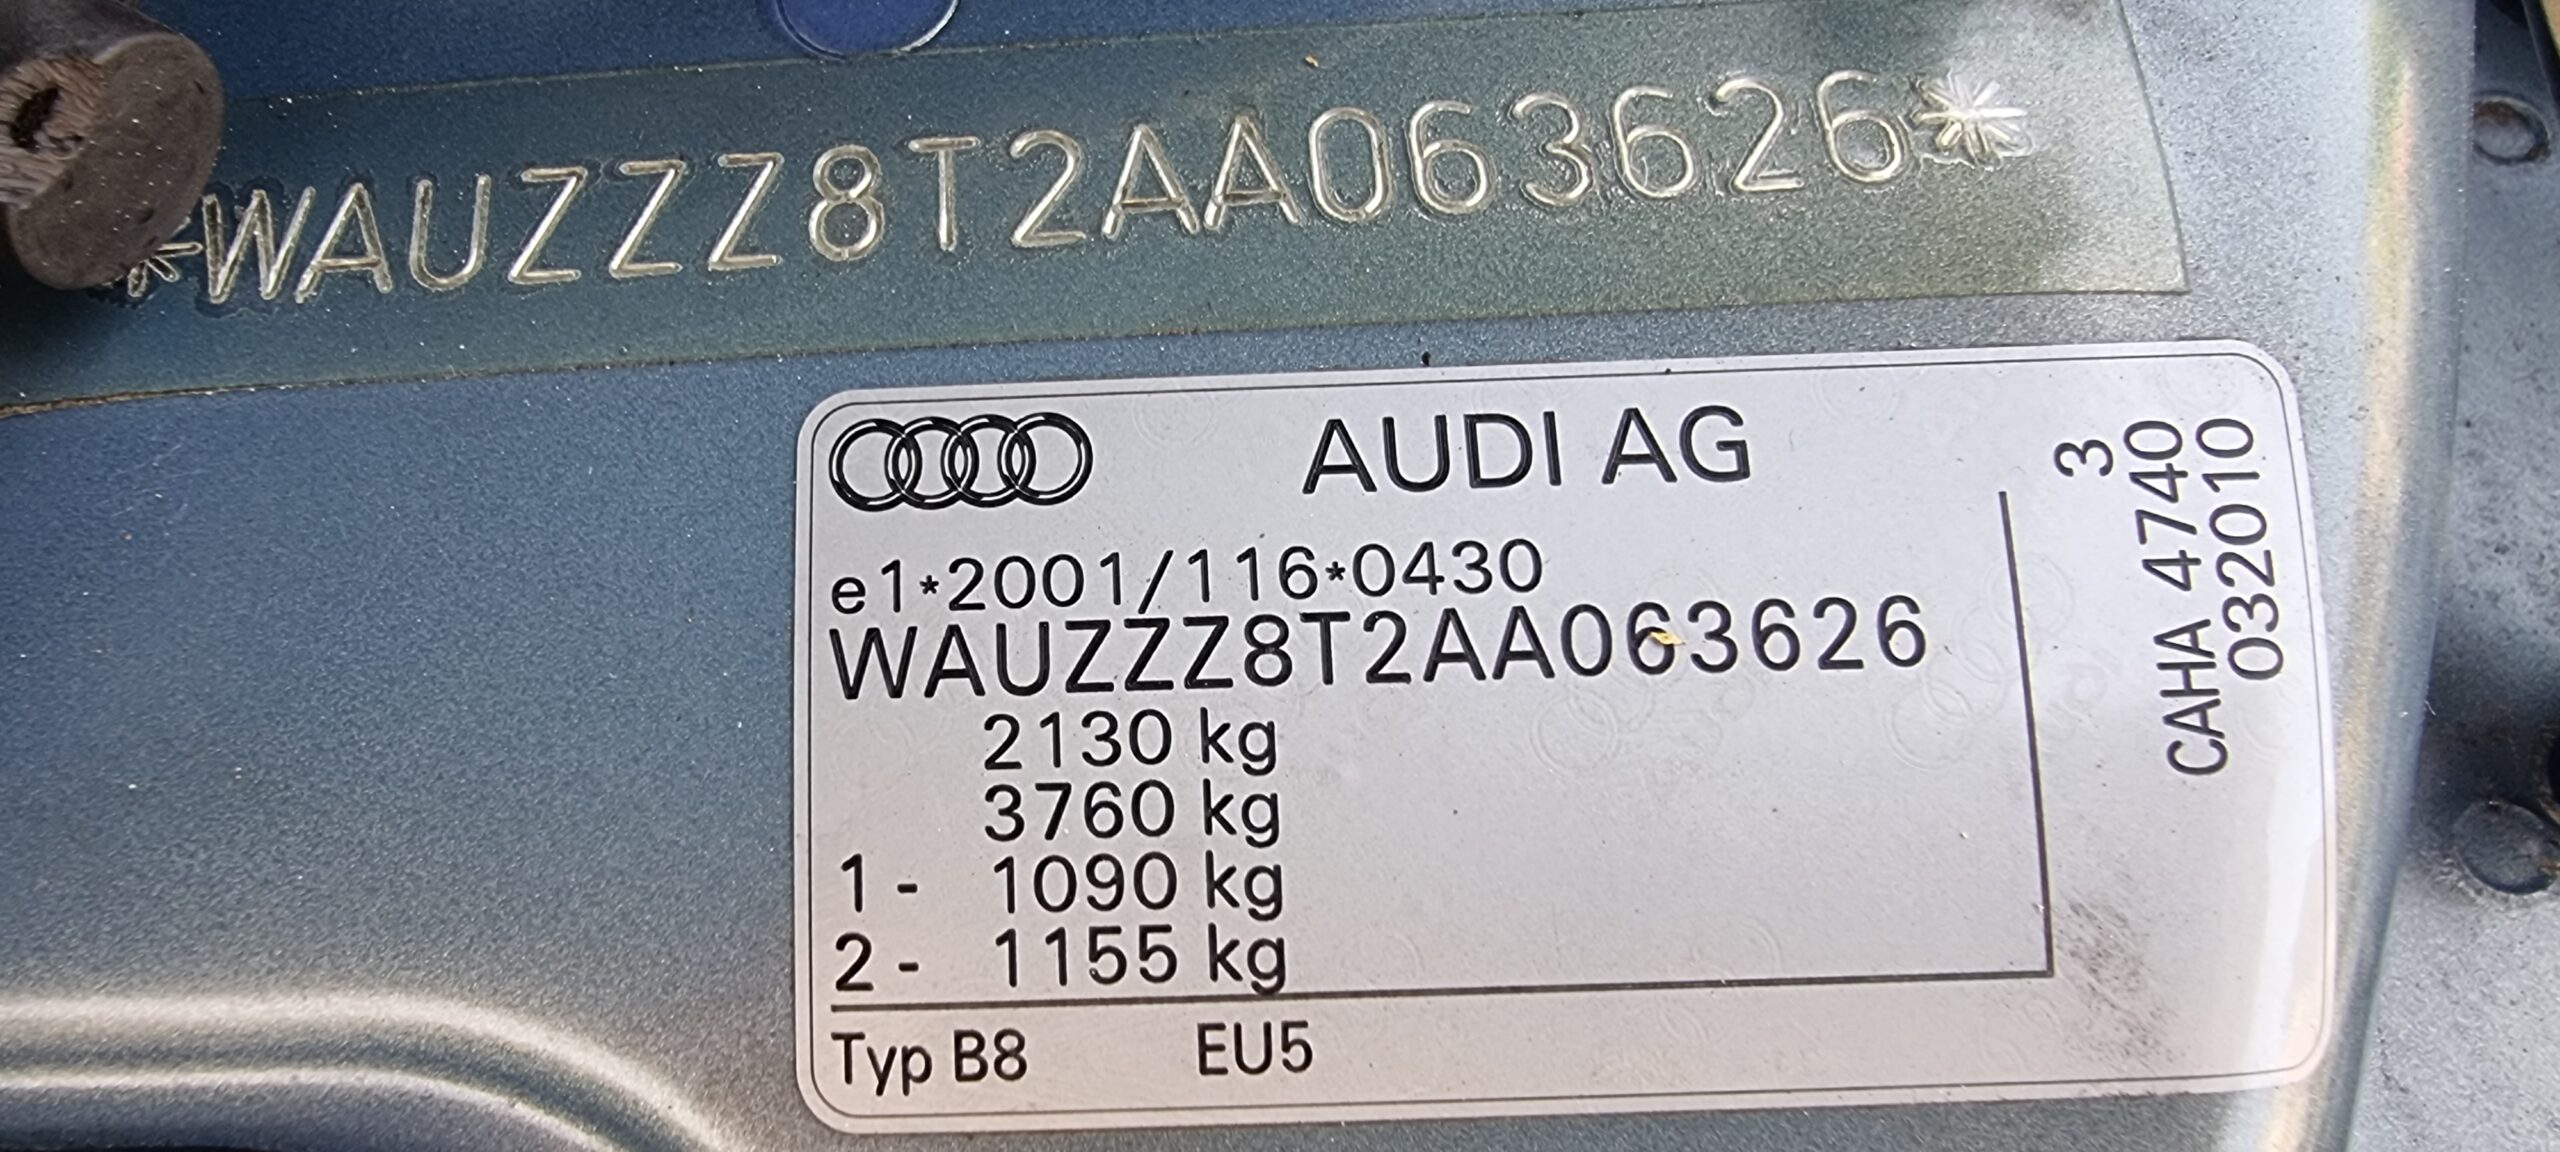 AUDI A5 S-LINE QUATTRO, 2.0 TDI, 170 CP, EURO 5